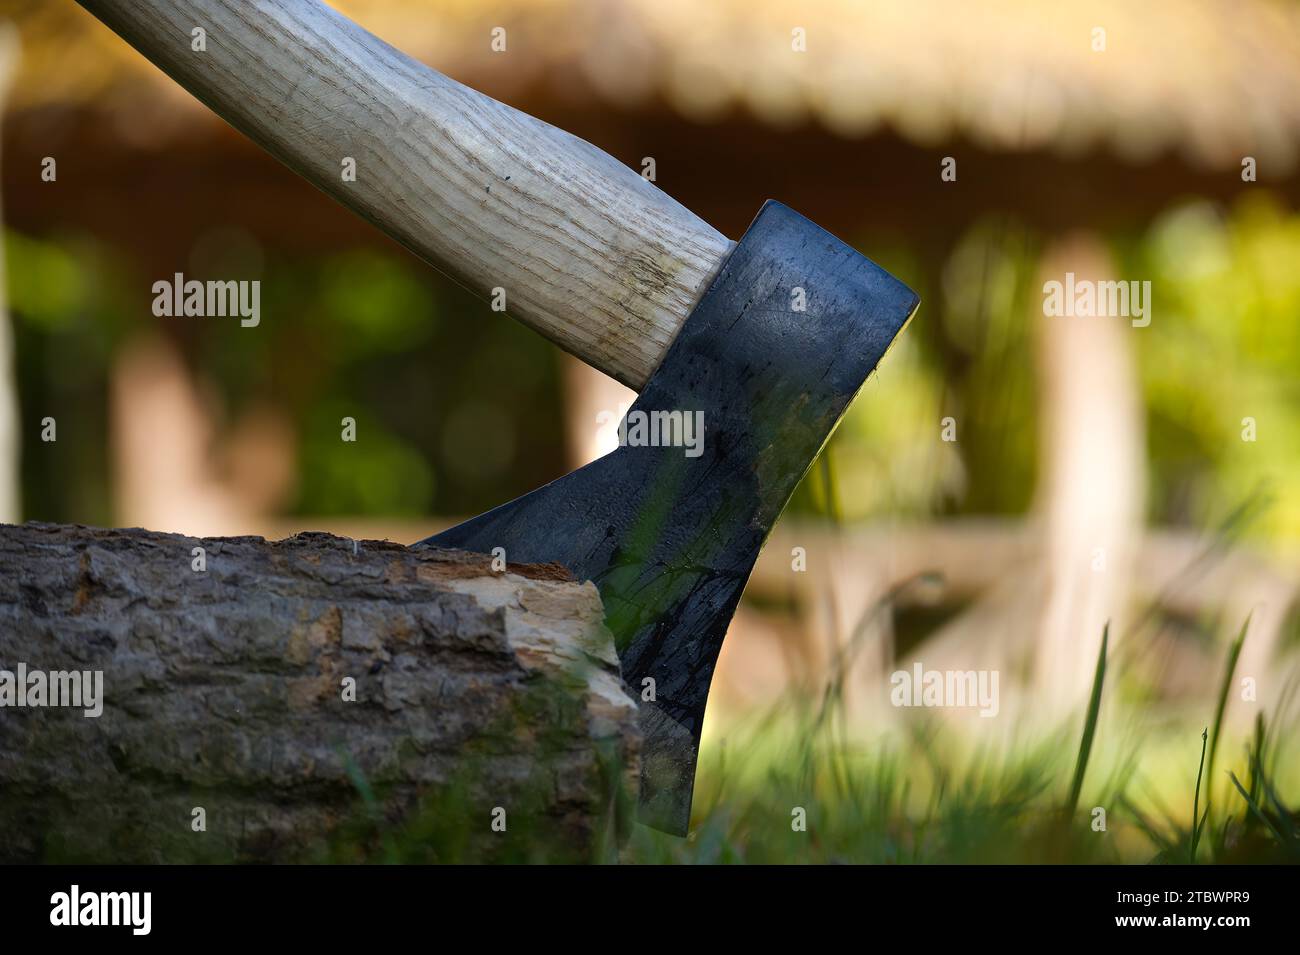 Axt oder Häcksler stecken in einem moosbedeckten Holzstamm in einem Wald, Nahaufnahme von der Seite. Konzept für Outdoor-Lifestyle oder Camping Stockfoto